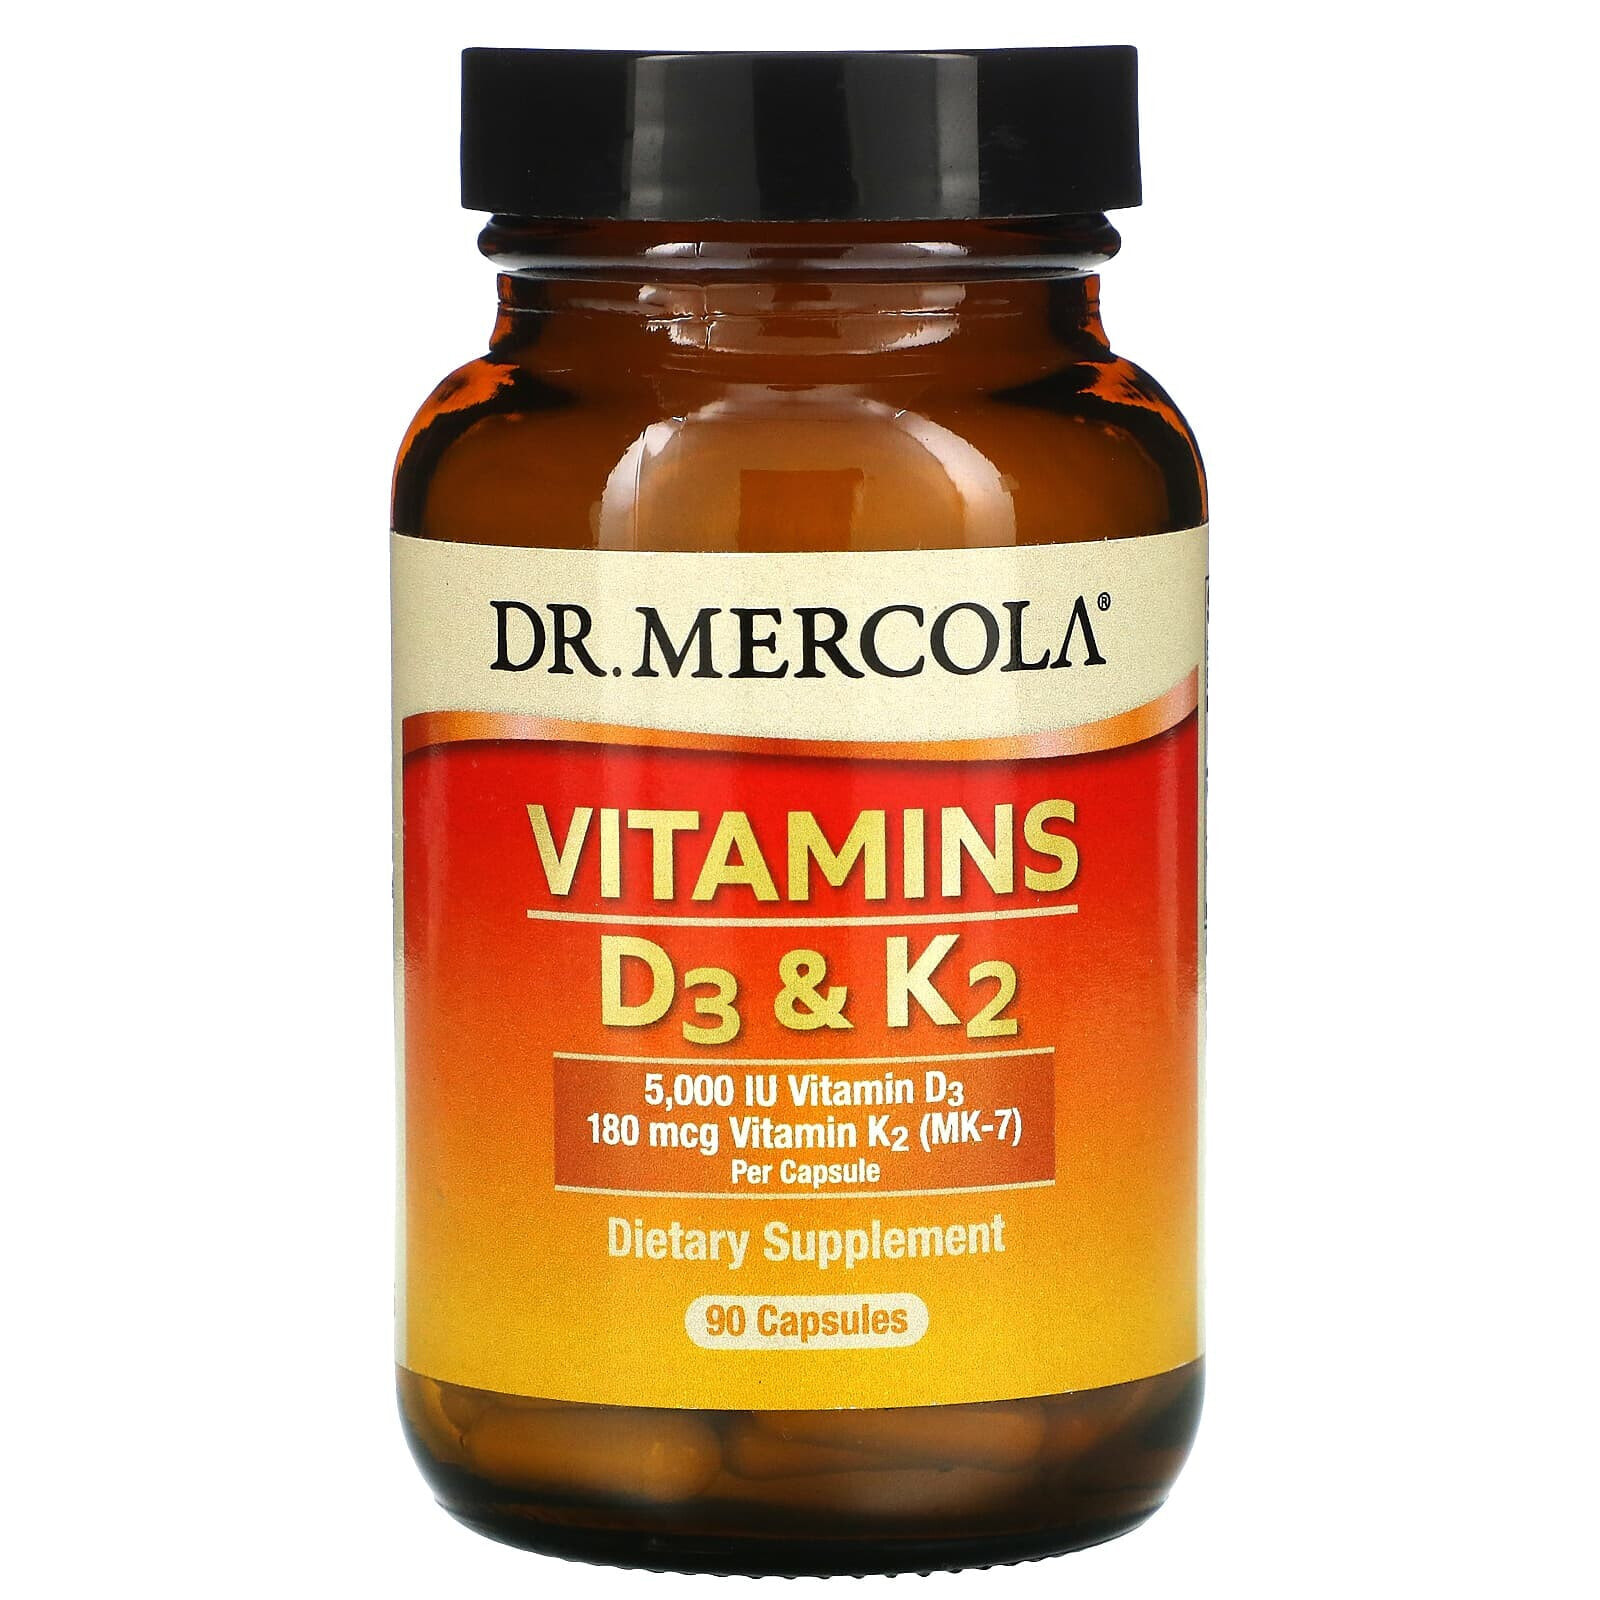 Vitamins D3 & K2, 90 Capsules